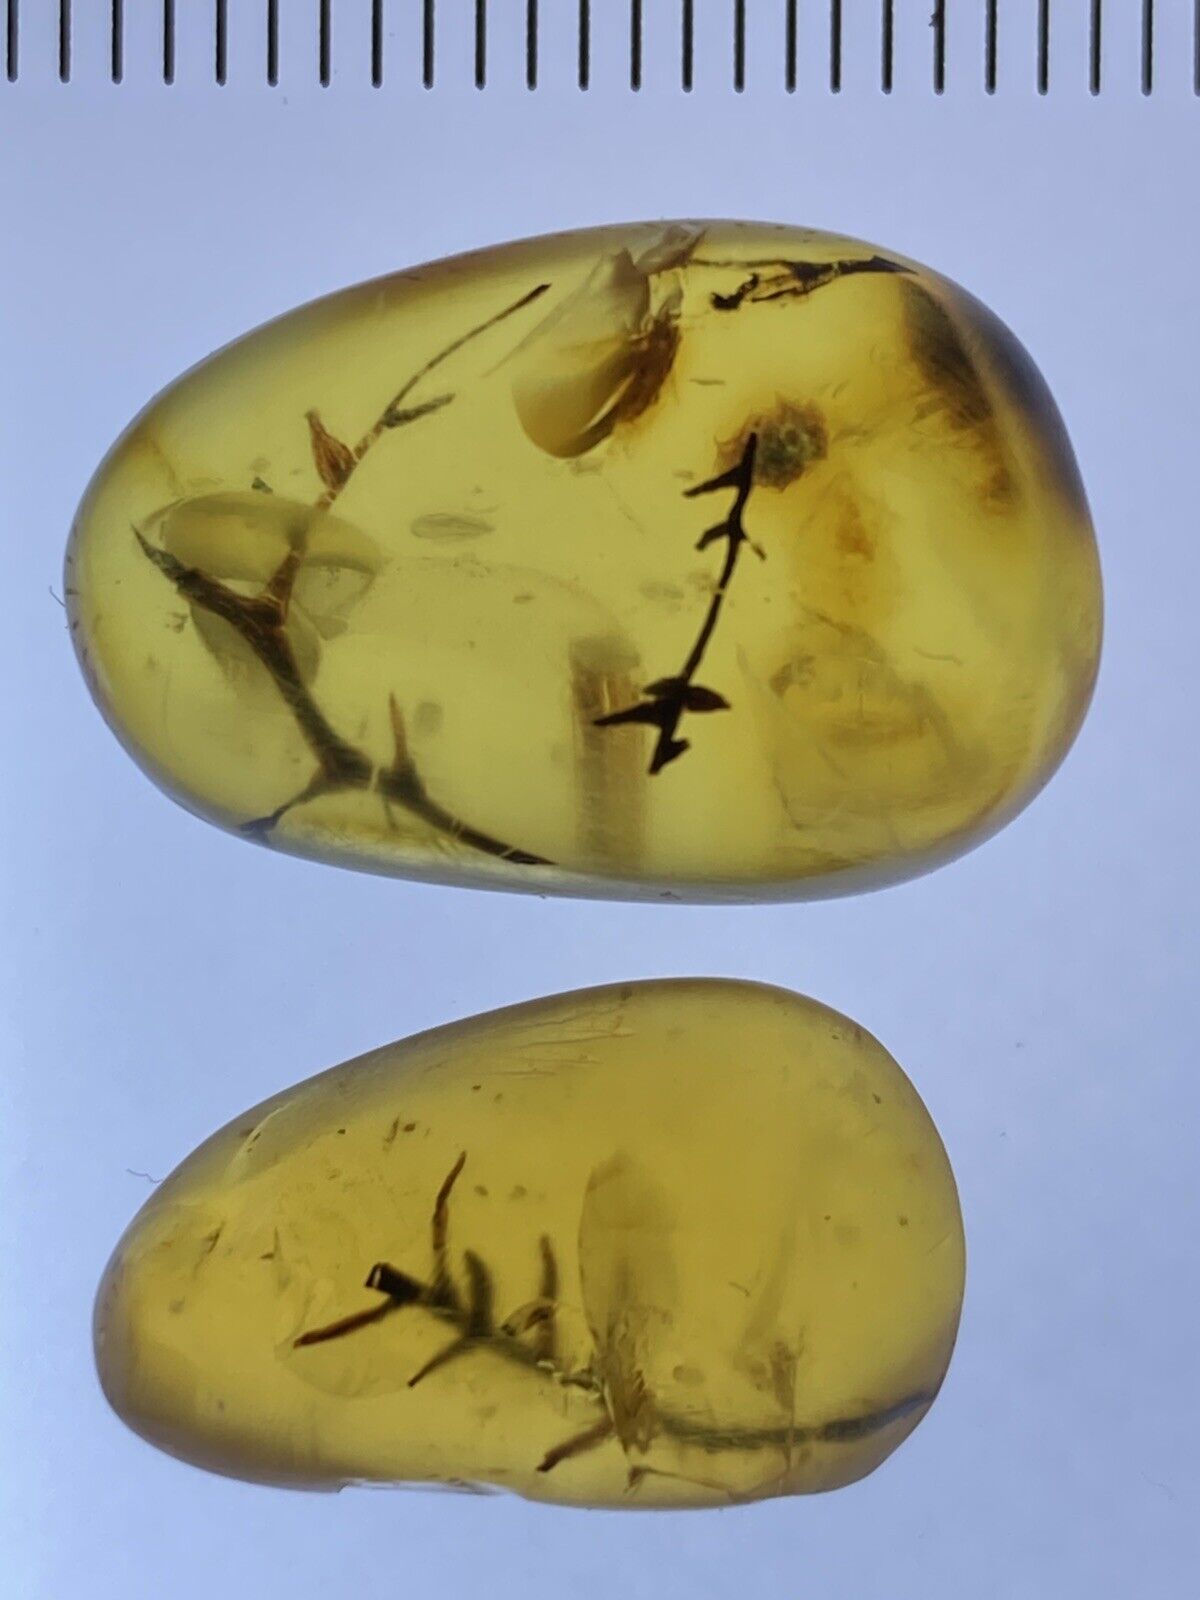 2 Unique Leaves (Dacrydium), Botanic Fossil In Genuine Burmite Amber, 98myo